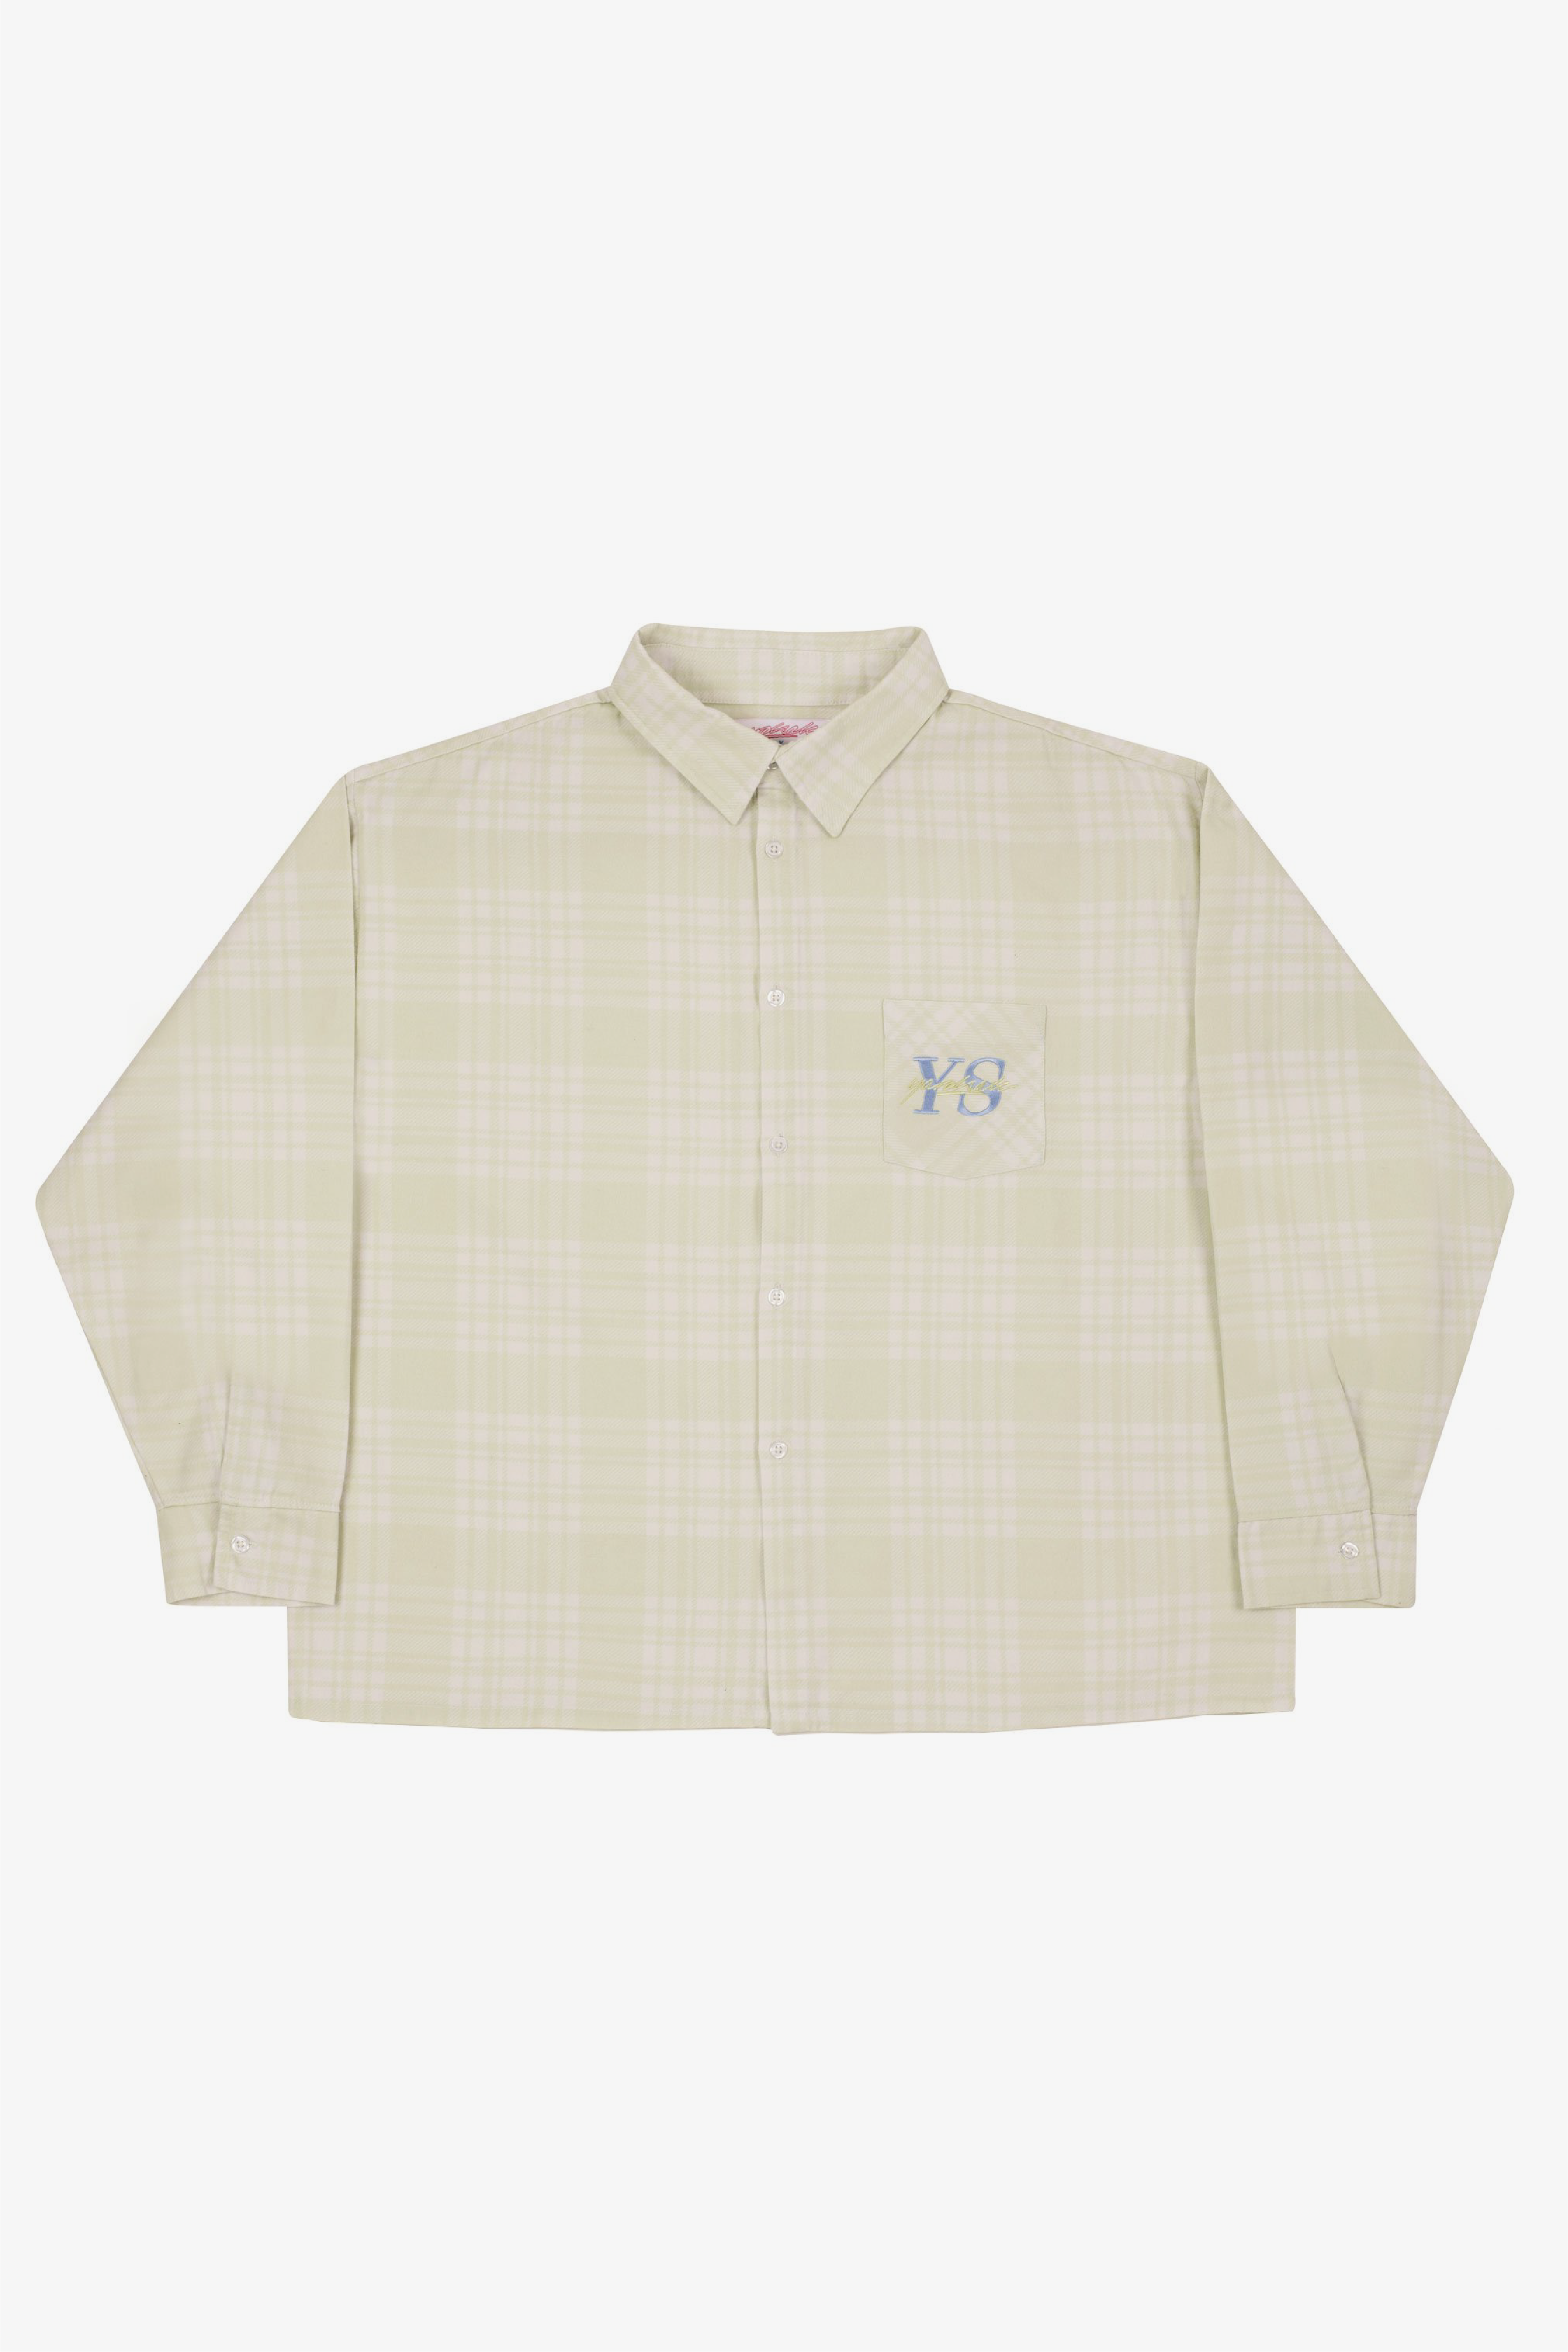 Selectshop FRAME - YARDSALE YS Plaid Shirt Shirts Dubai